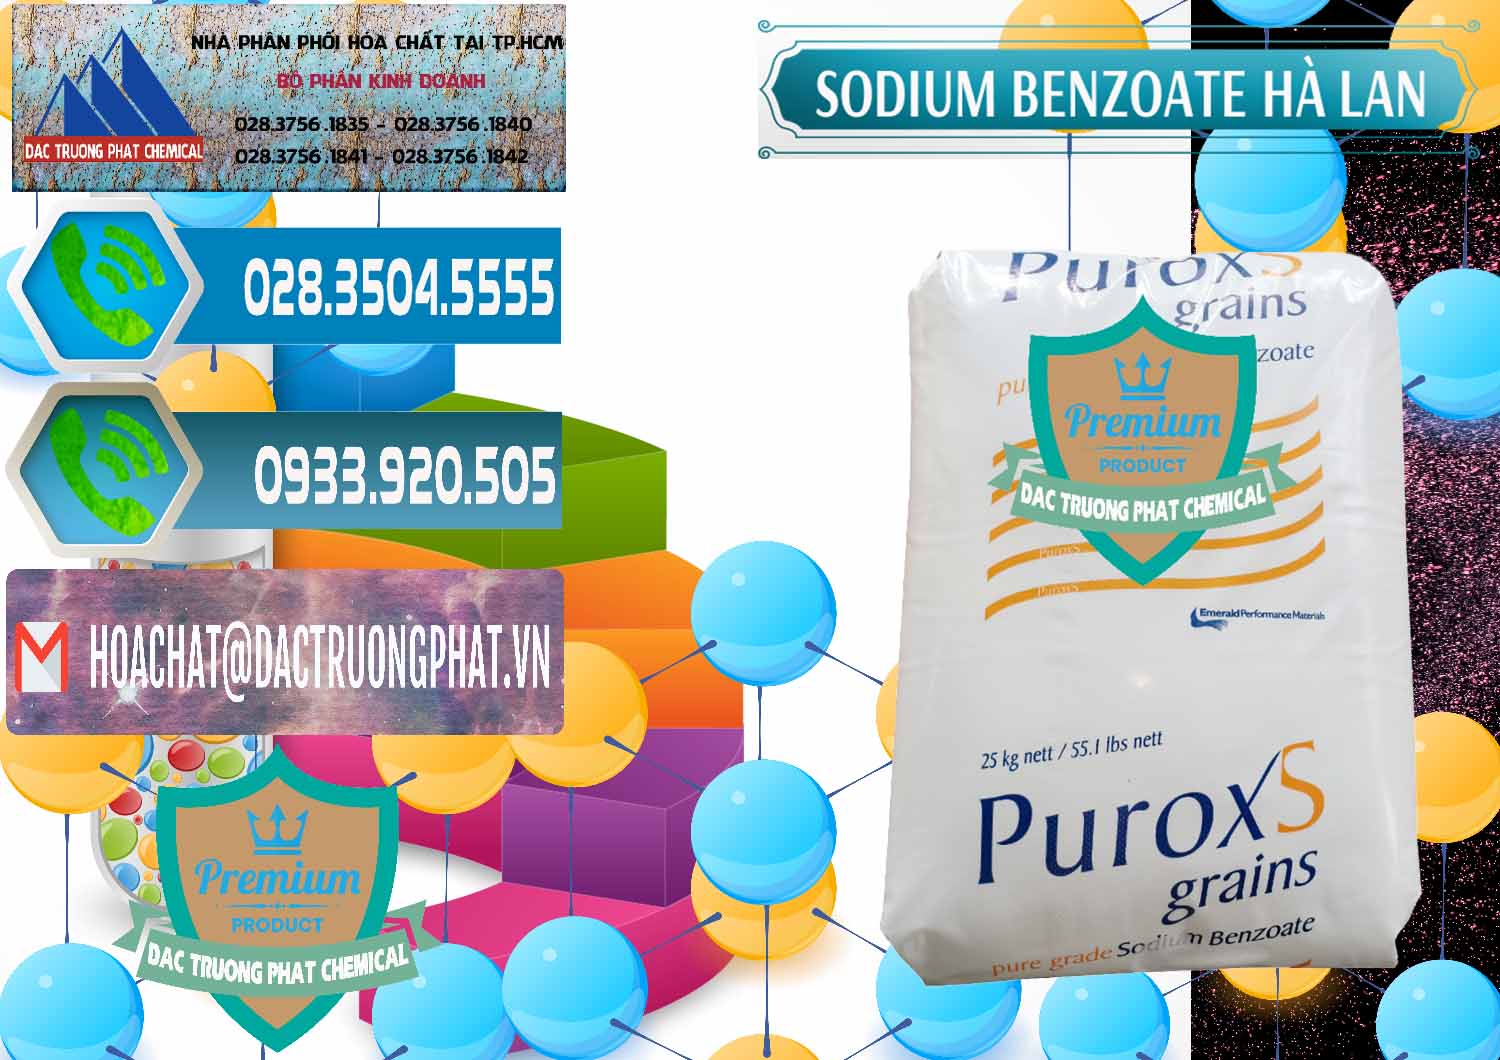 Công ty bán & cung cấp Sodium Benzoate - Mốc Bột Puroxs Hà Lan Netherlands - 0467 - Công ty bán - cung cấp hóa chất tại TP.HCM - congtyhoachat.net